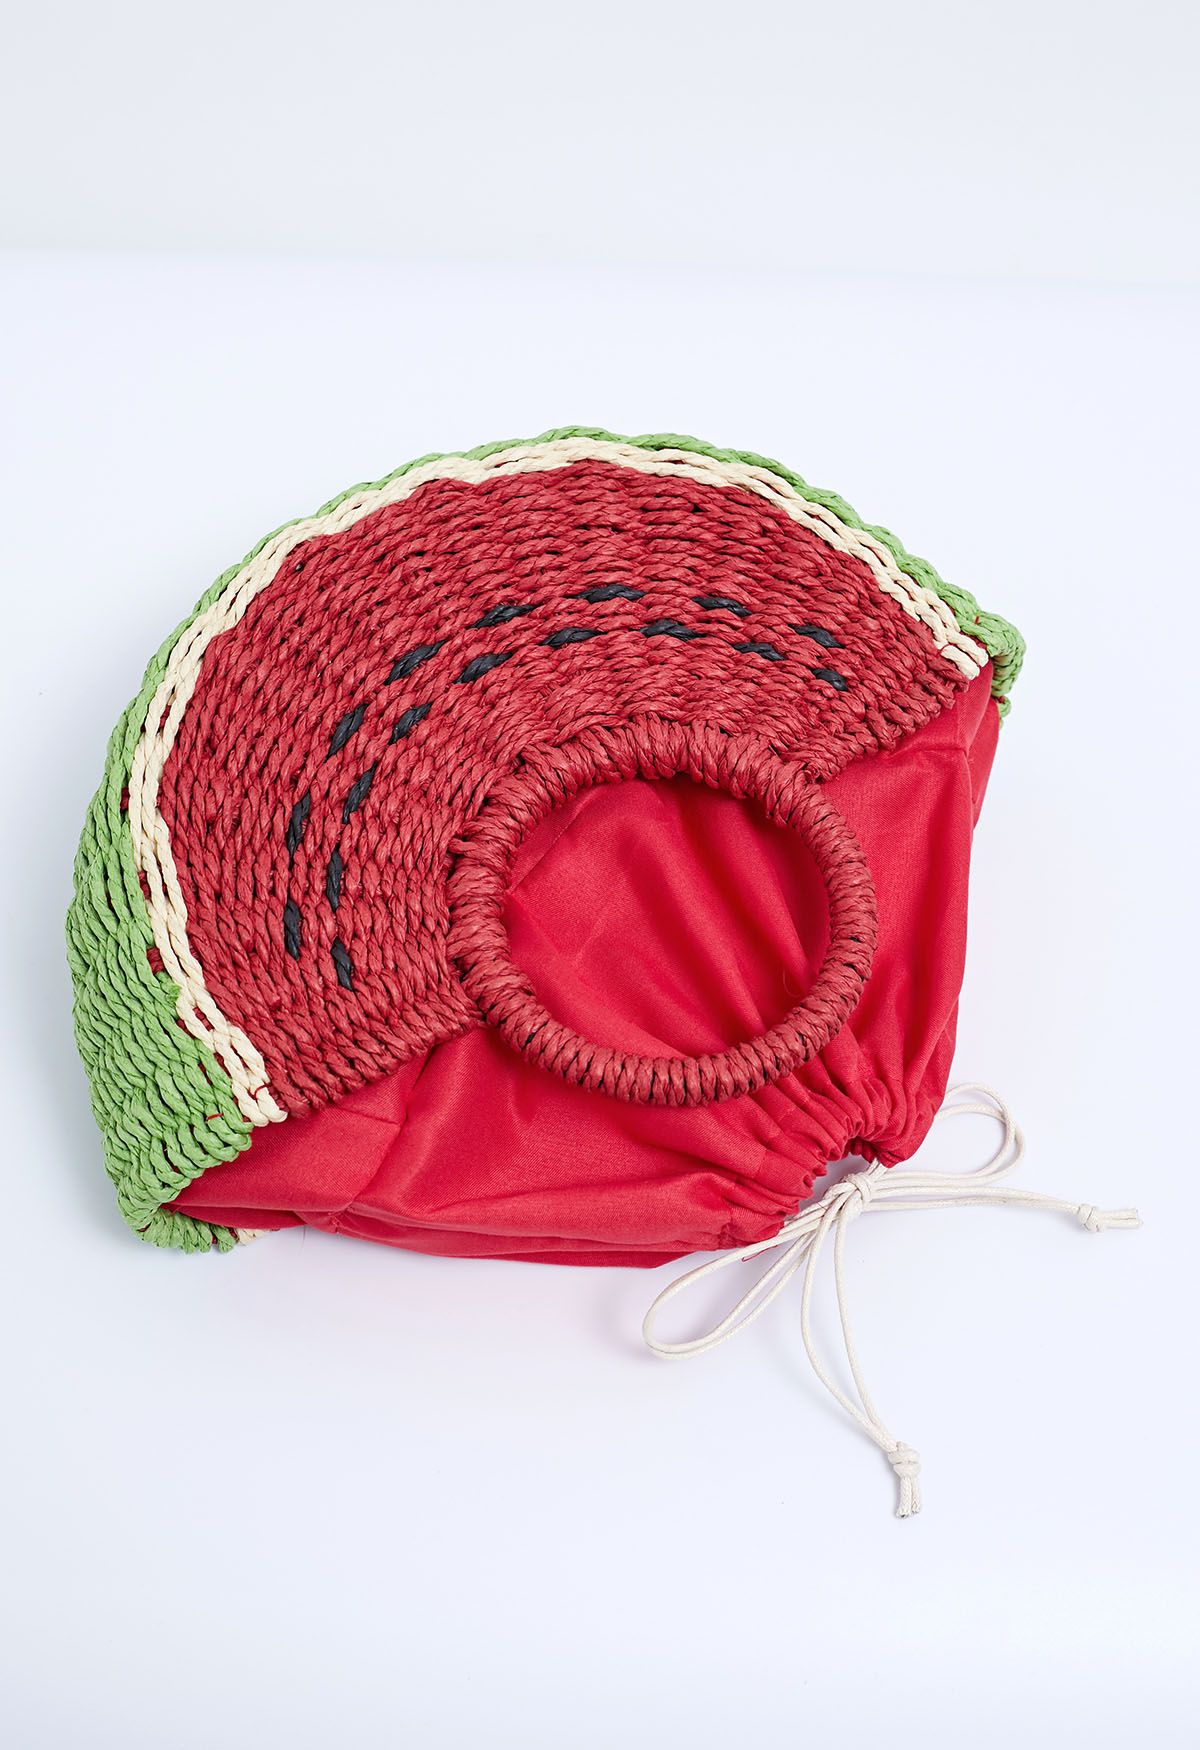 Handtasche aus gewebtem Stroh mit Wassermelonen-Motiv